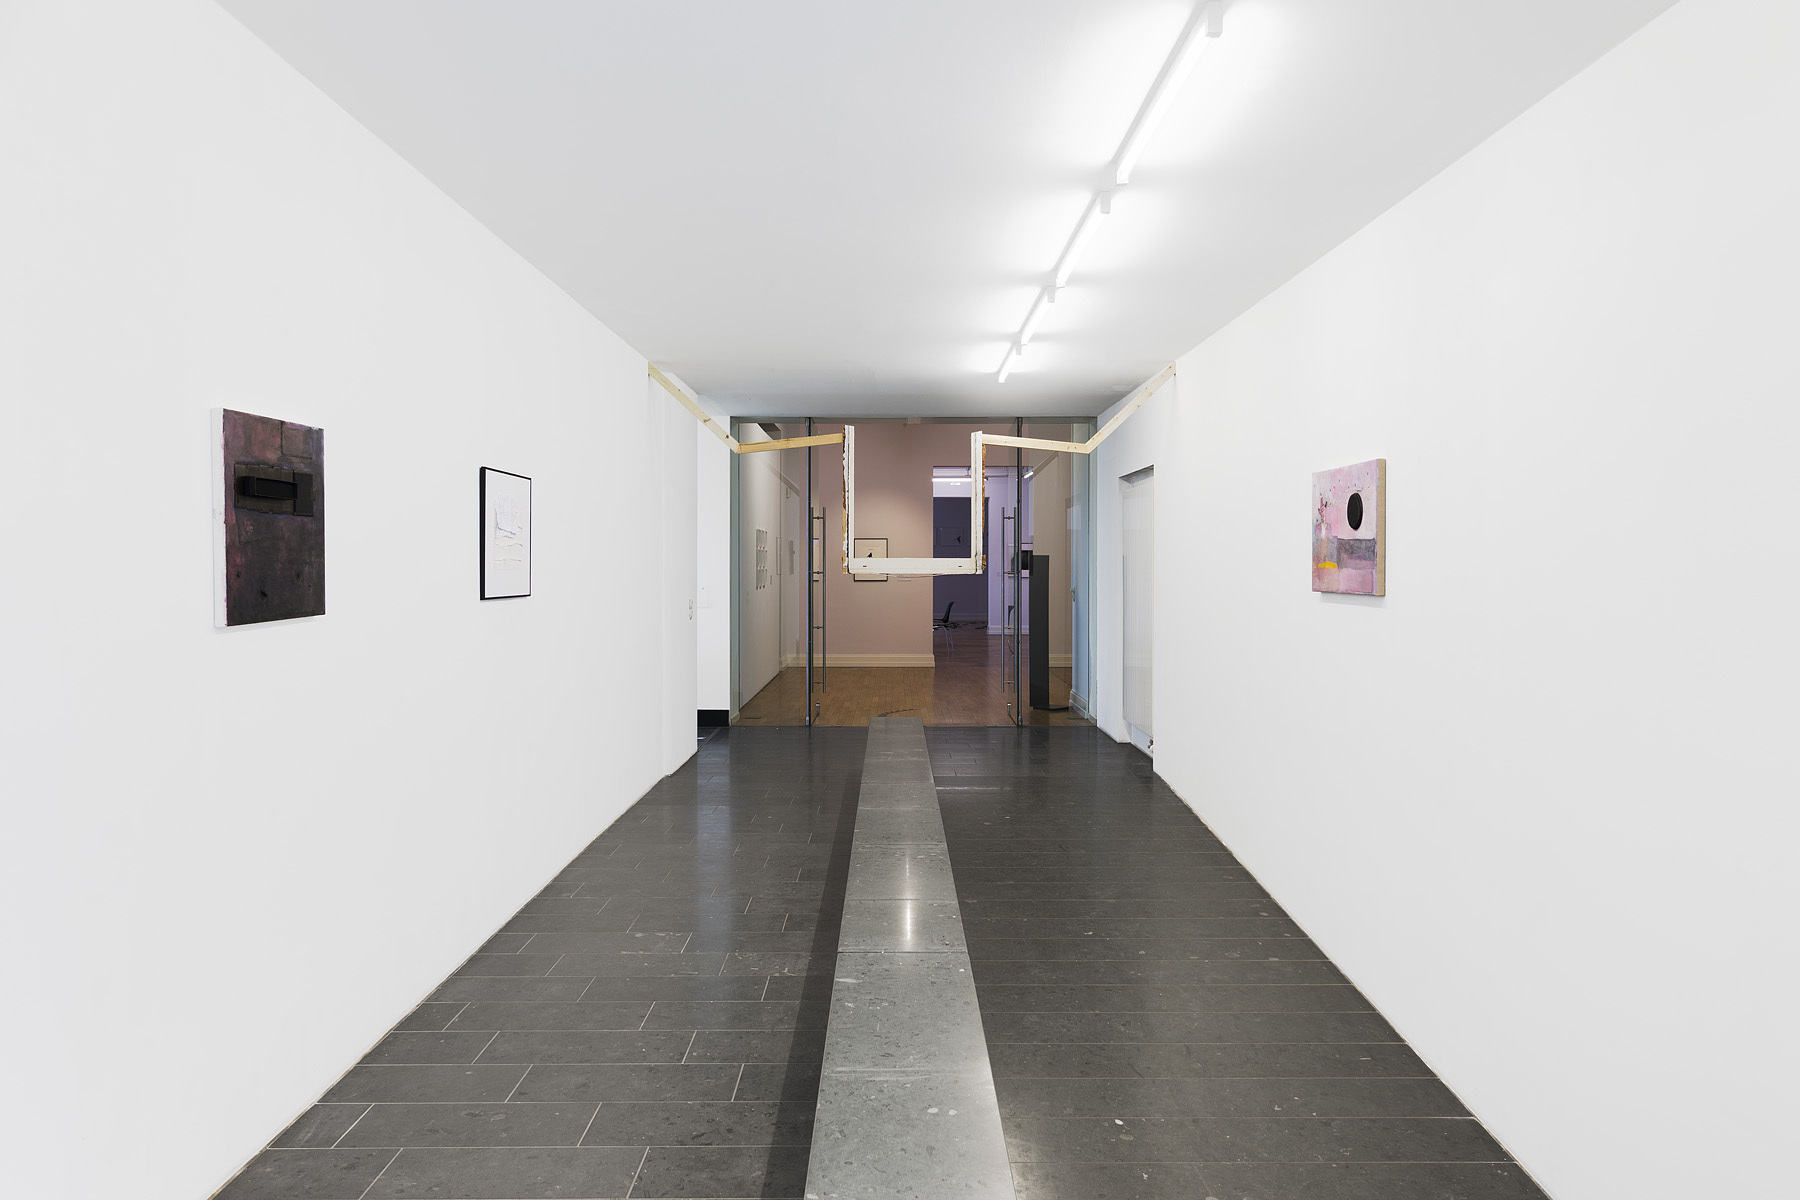 Gabriel Possamai, Lisa Gutscher, Adolescence, 2021, exhibition view4, Opelvillen, Rüsselsheim